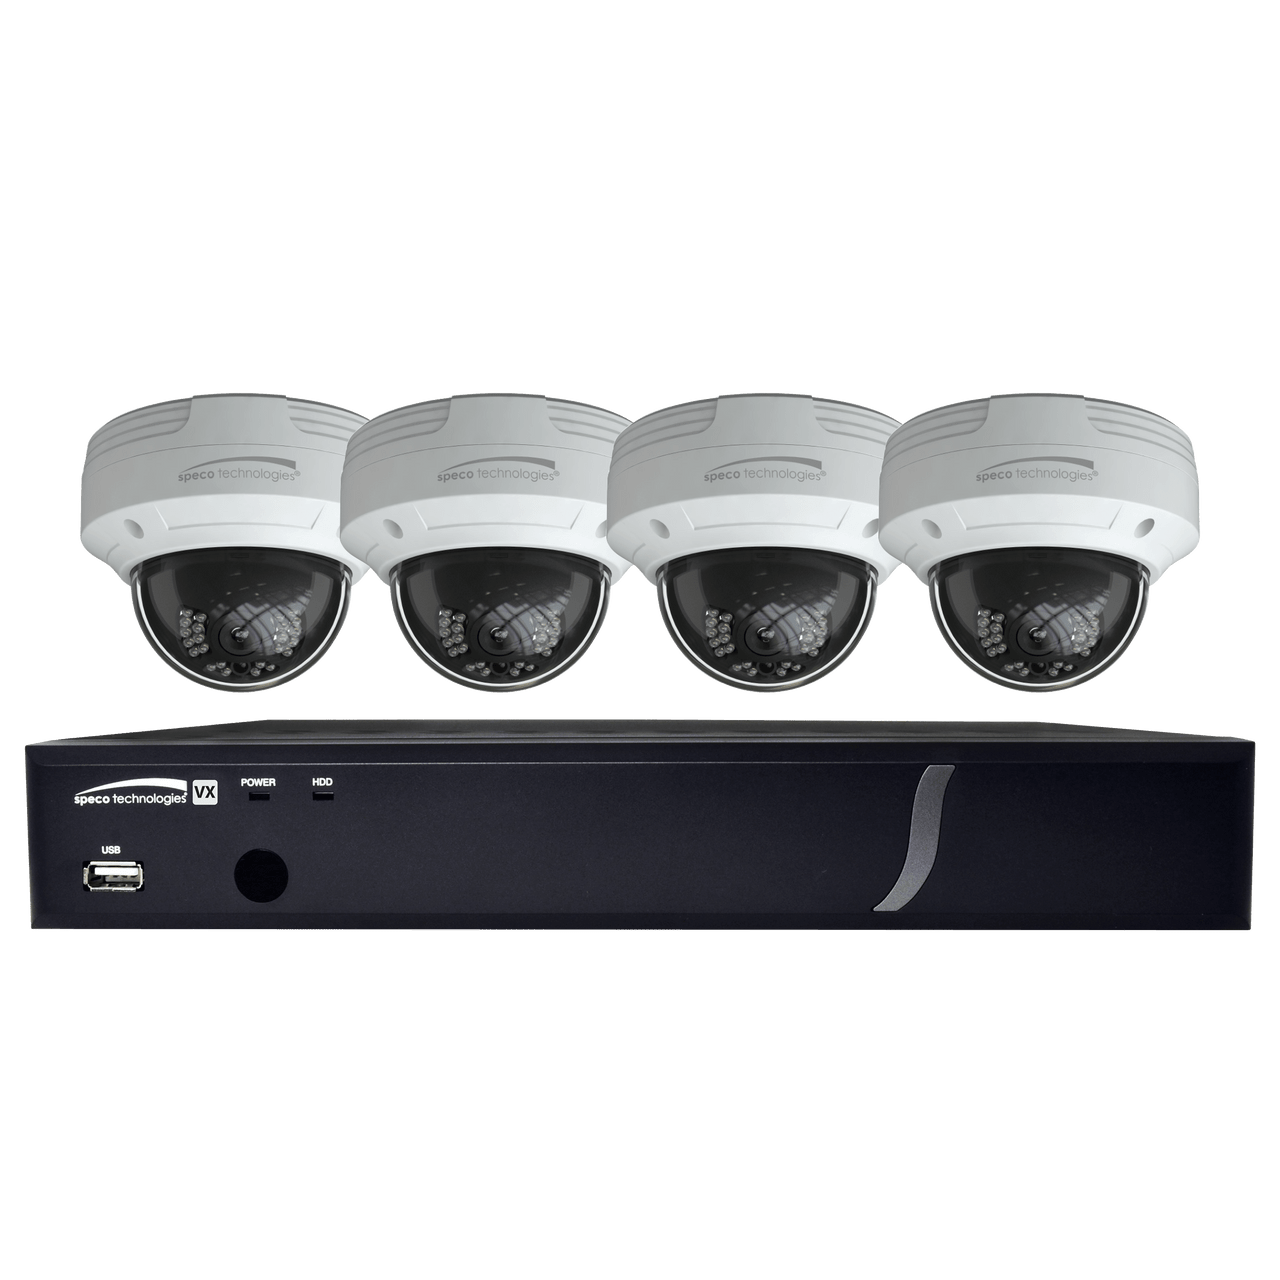 Speco Technologies ZIPT84D2 8CH HD-TVI DVR, 1080p, 120fps, 2TB w/ 4 Outdoor IR Dome Cameras 2.8mm lens, White (ZIPT84D2)